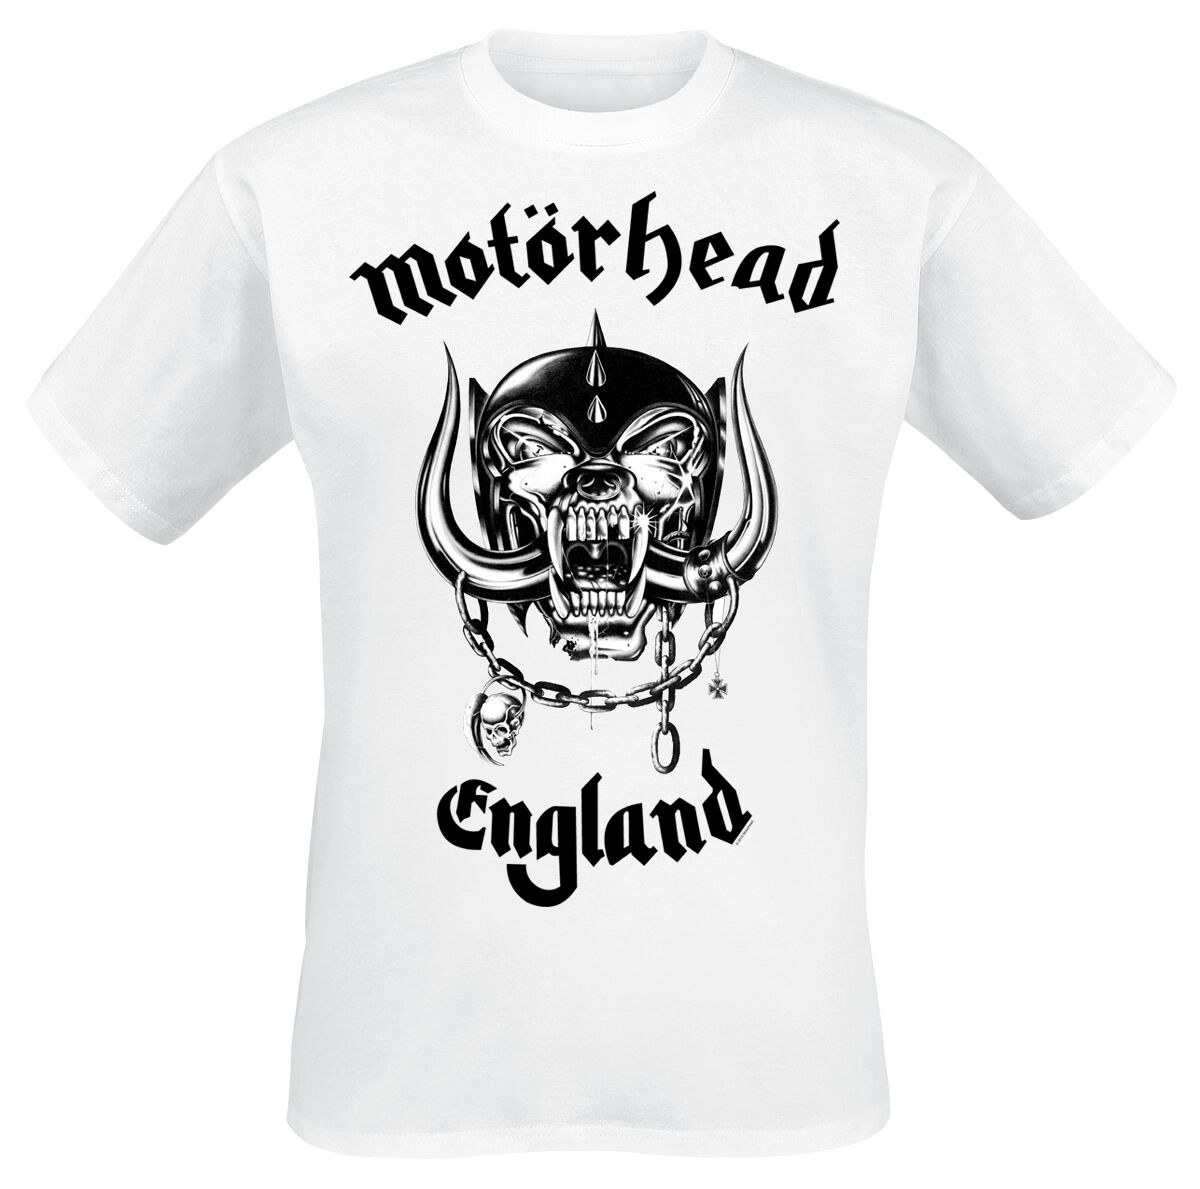 Motörhead T-Shirt - England - S bis XXL - für Männer - Größe XL - weiß  - Lizenziertes Merchandise!